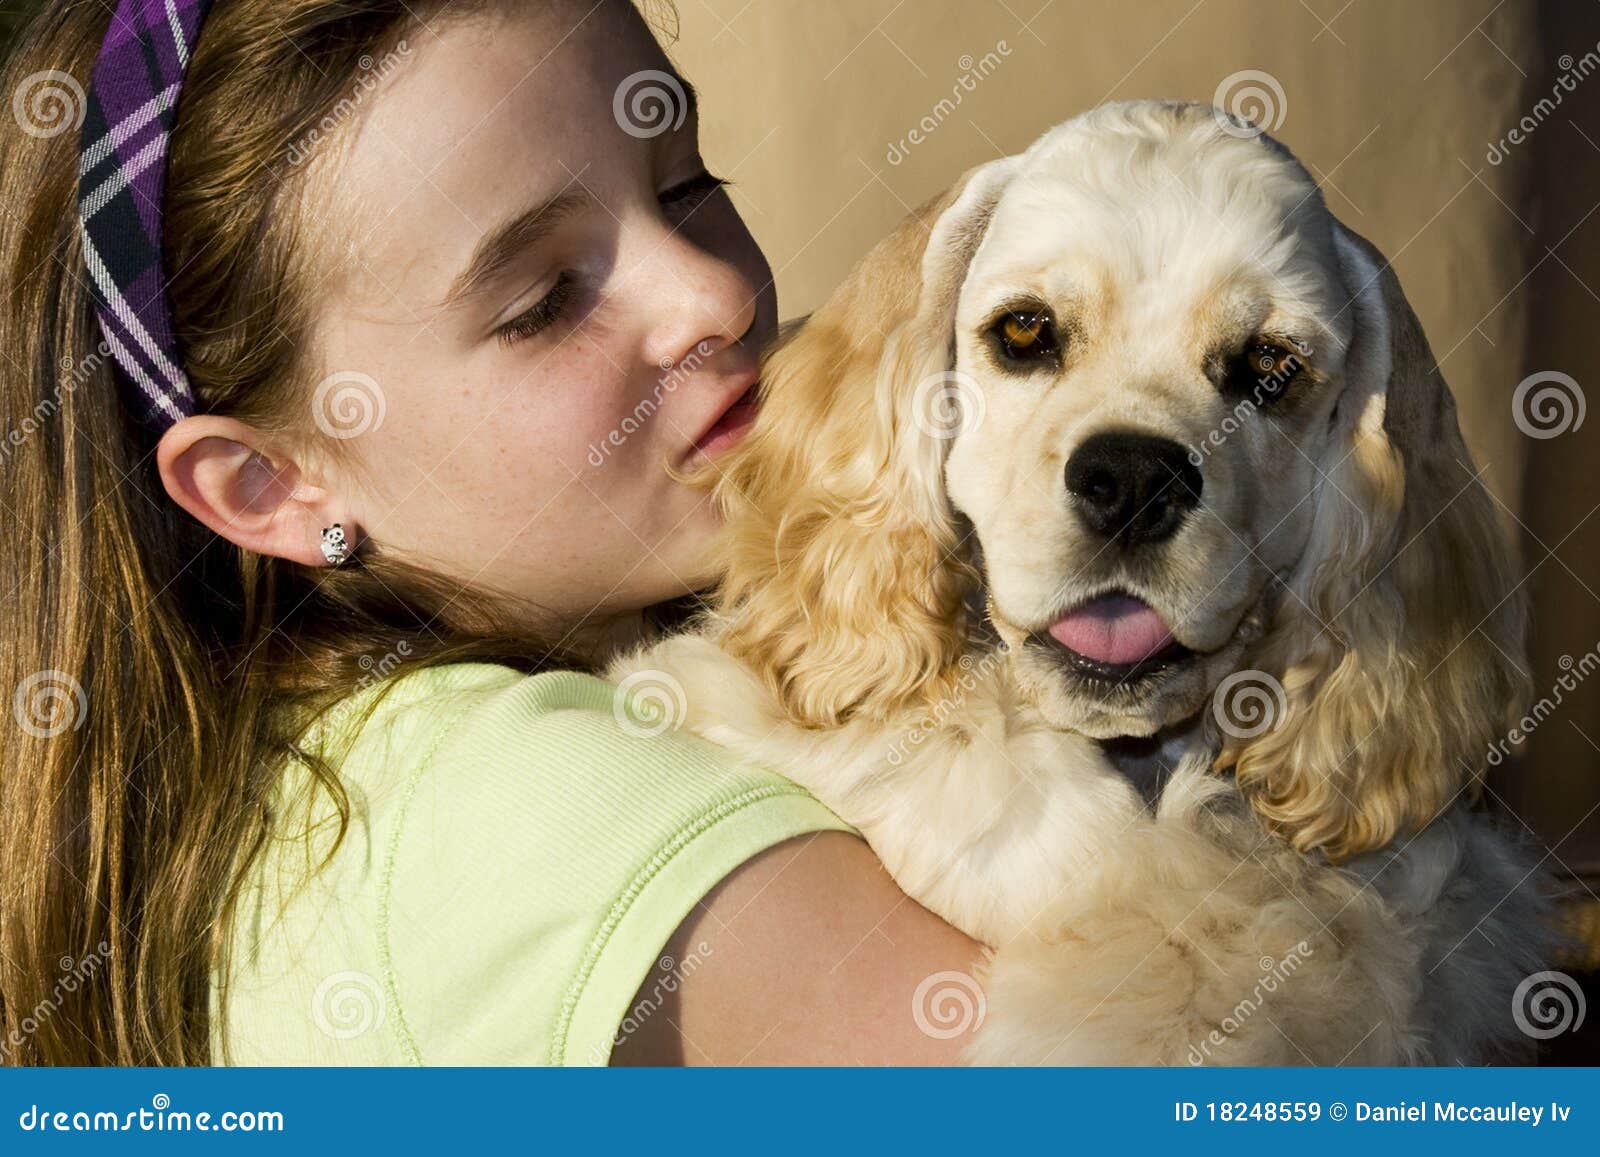 Girl two dog